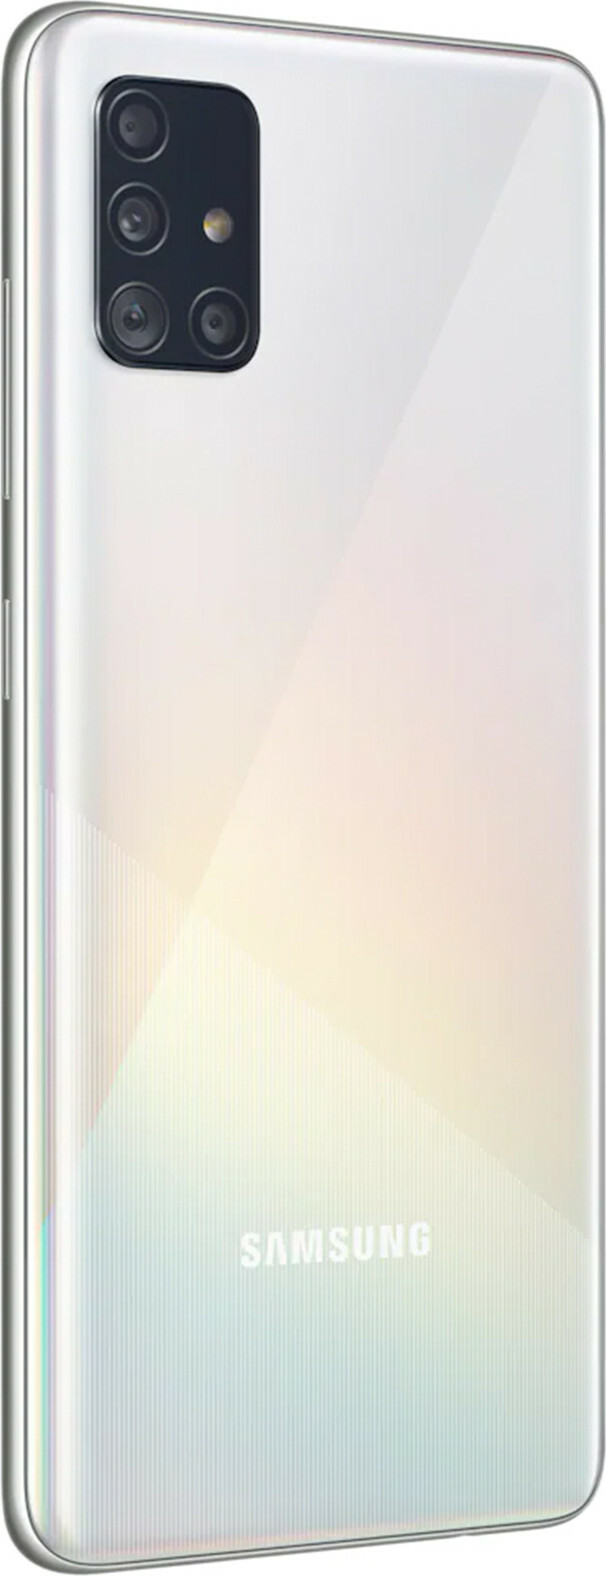 Samsung Galaxy A51 128GB (4GB RAM)